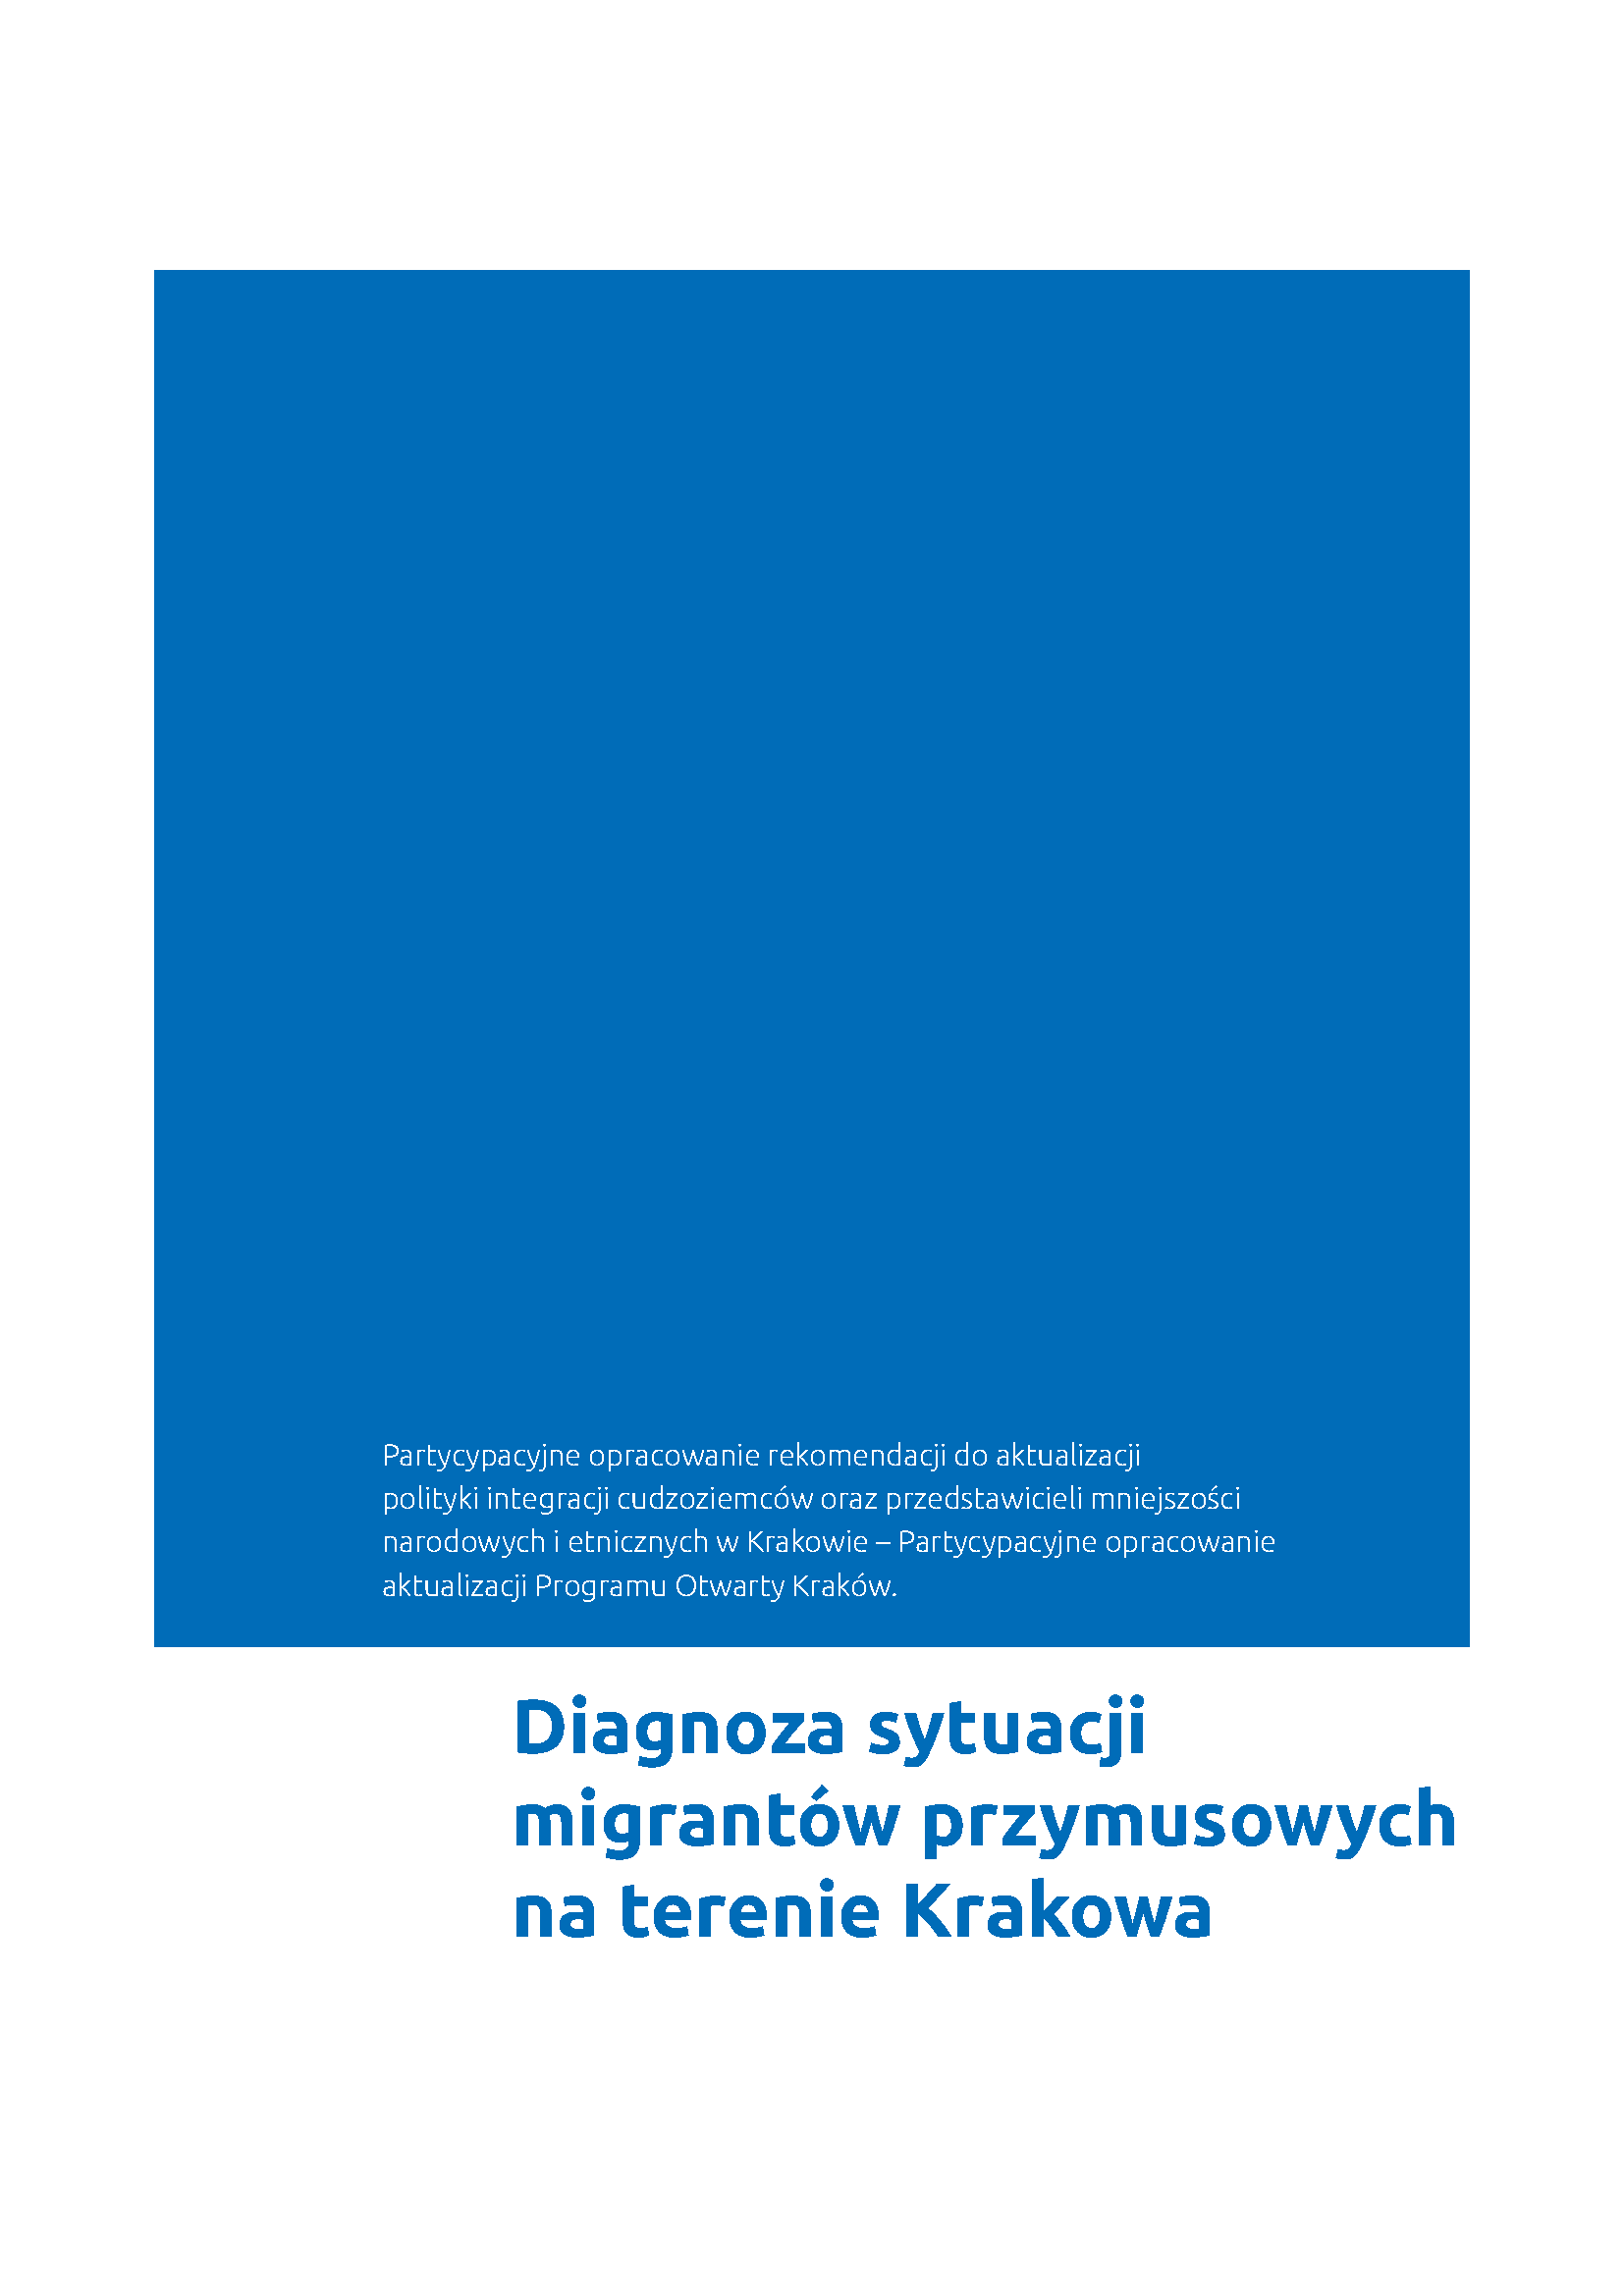 Diagnoza sytuacji migrantów przymusowych na terenie Krakowa